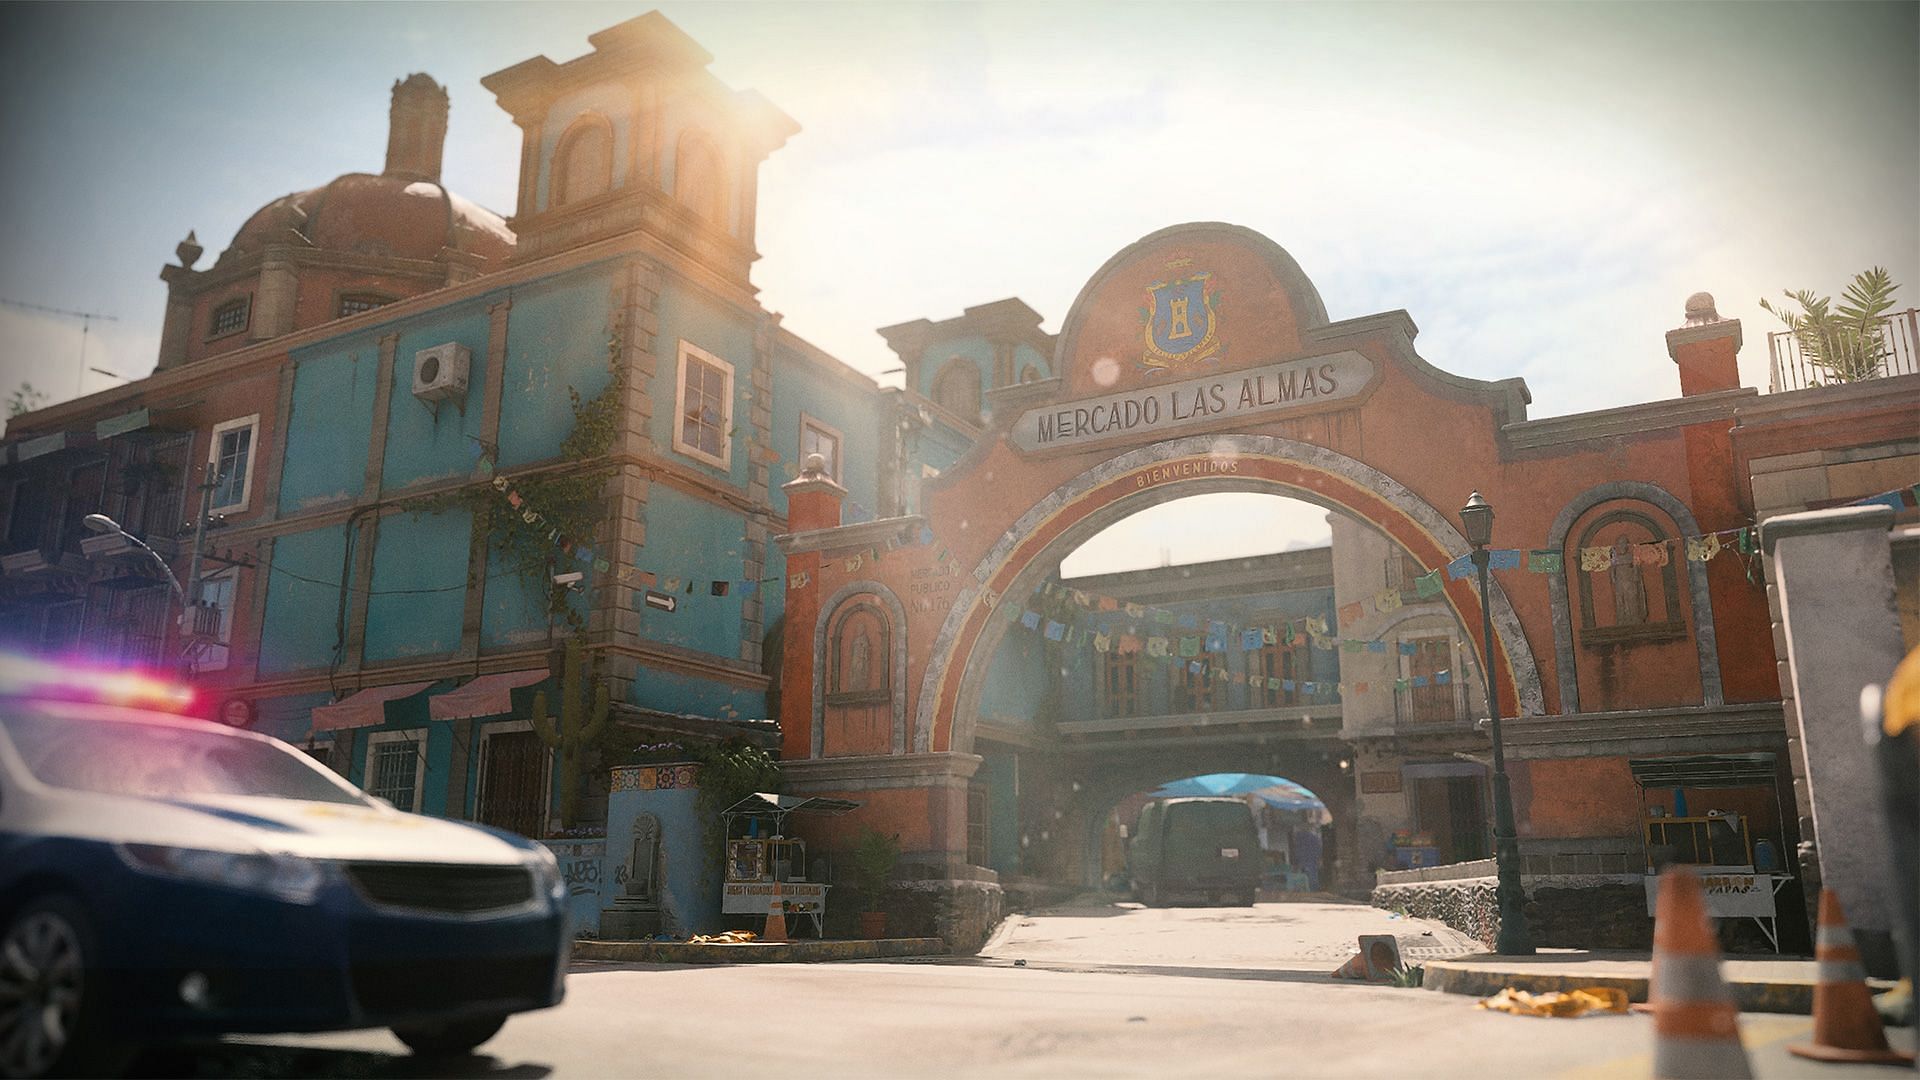 Mercado Las Almas in Modern Warfare 2 (Image via Activision)